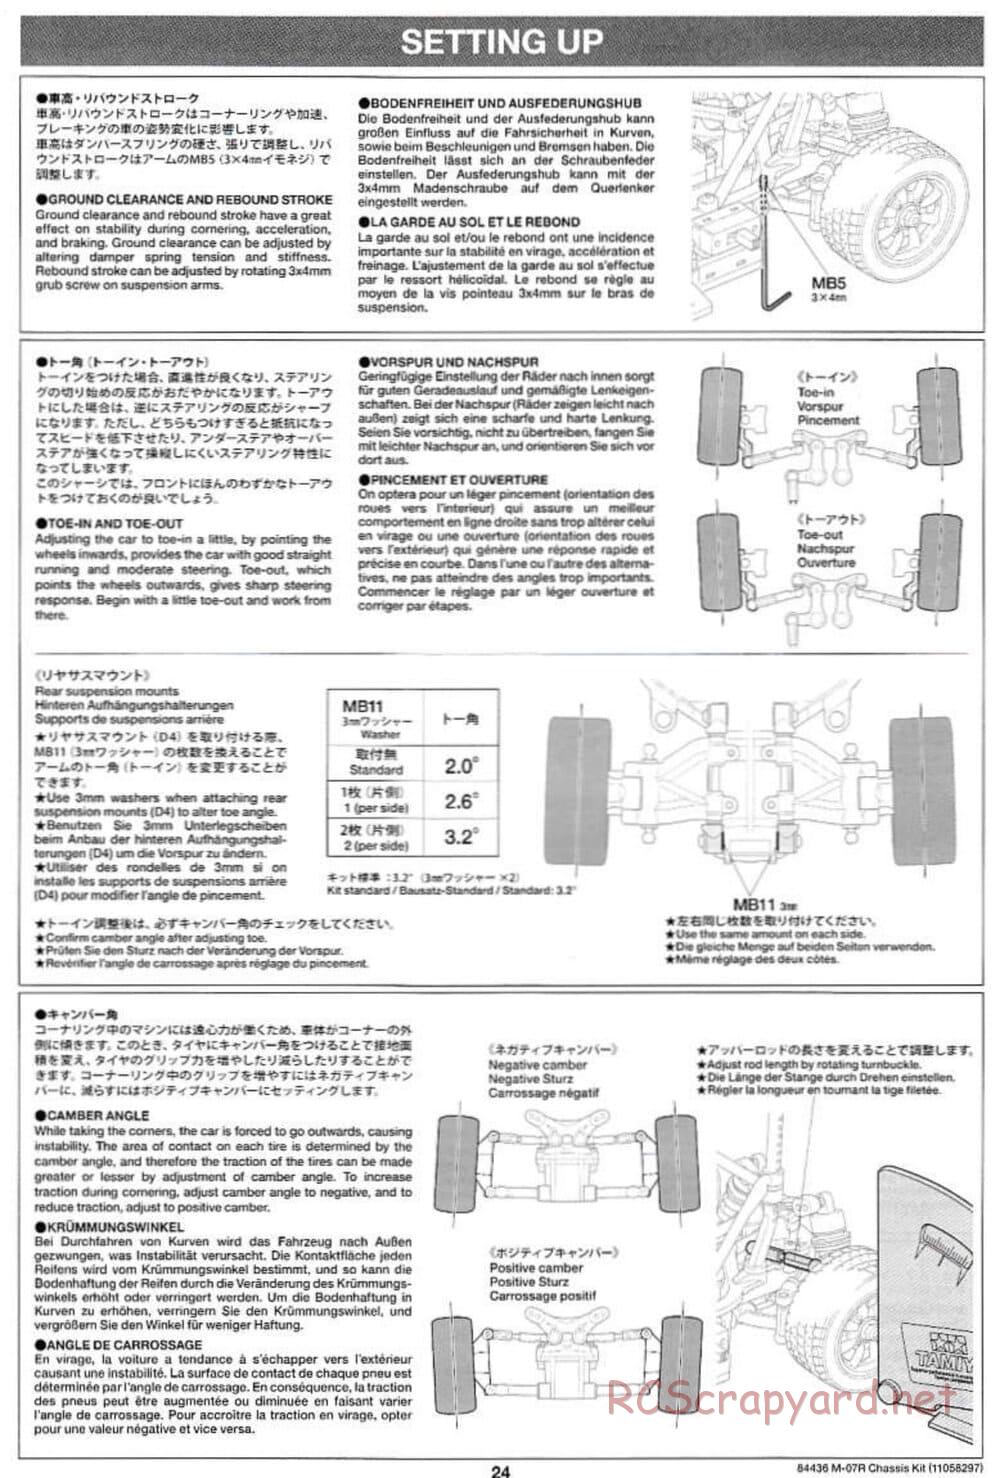 Tamiya - M-07R Chassis - Manual - Page 24